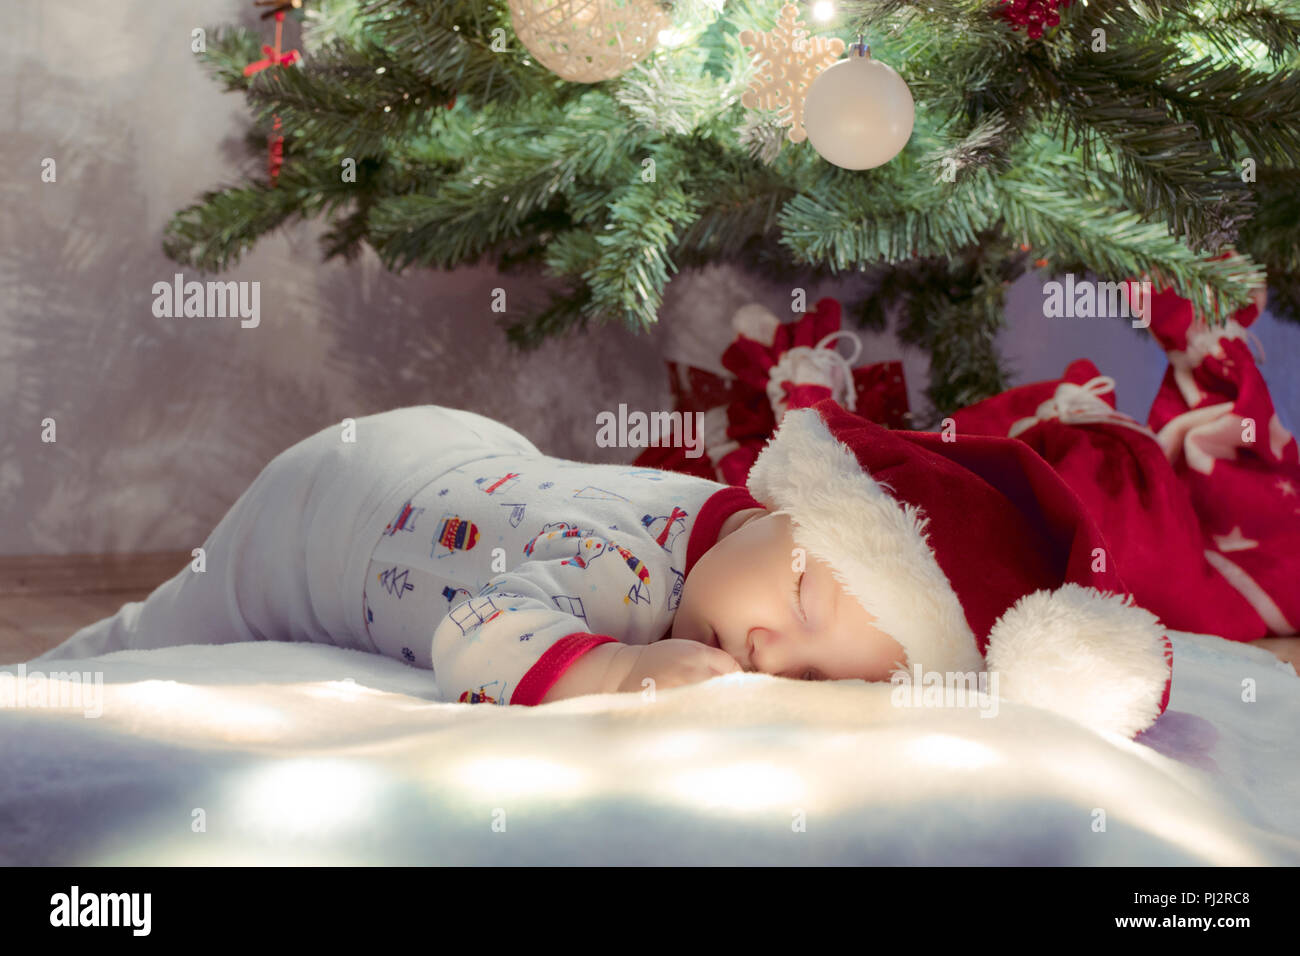 Albero Di Natale Sogno.Dolce Neonato Bambino Addormentato E Sognare Sotto Albero Di Natale Foto Stock Alamy